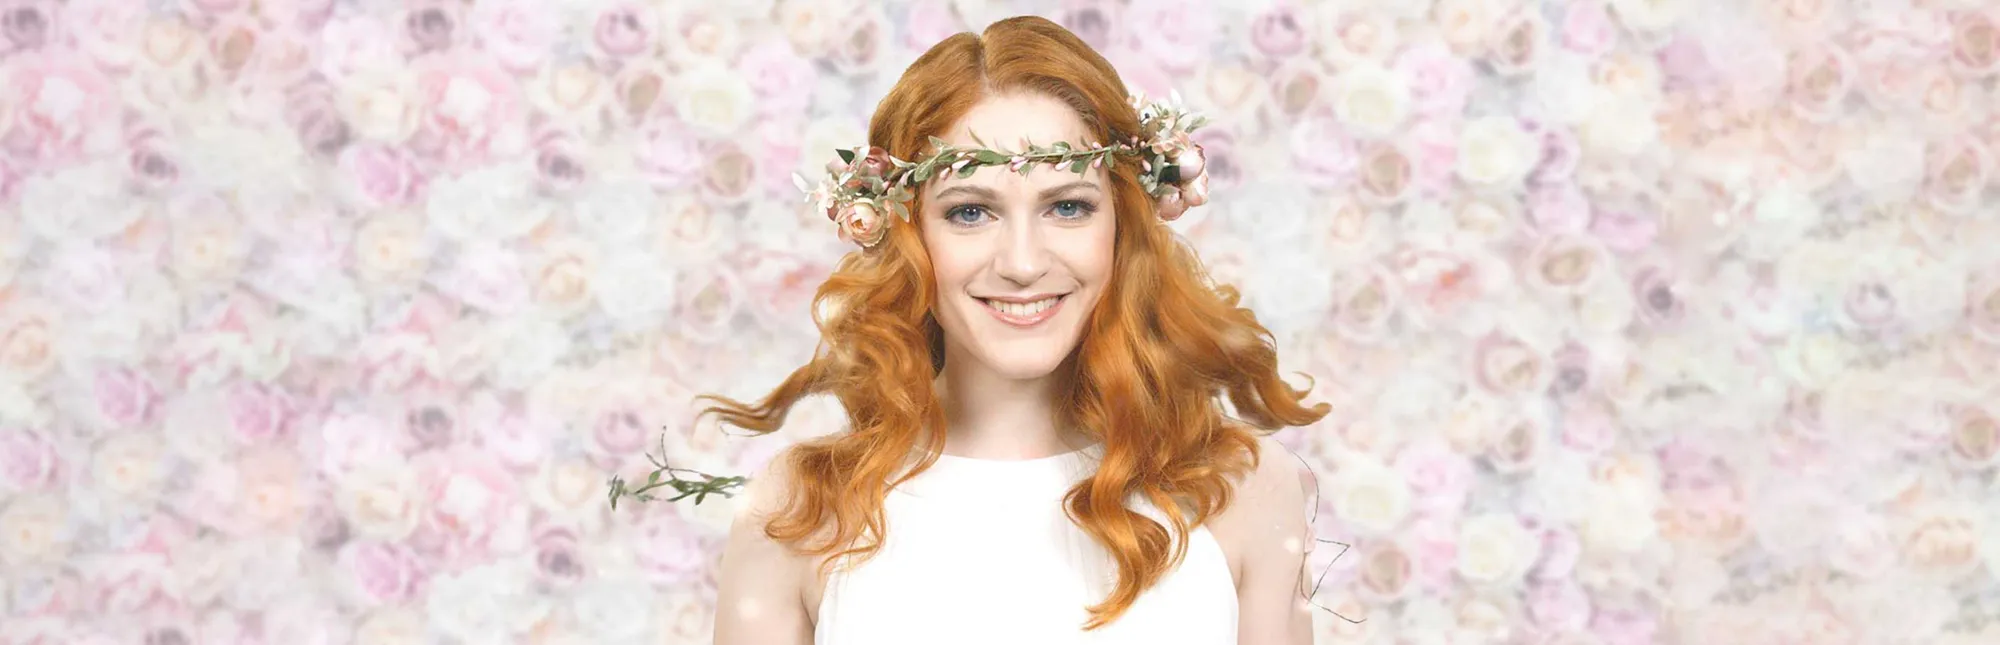 Foto einer rothaarigen Braut mit Blumenkranz im Haar